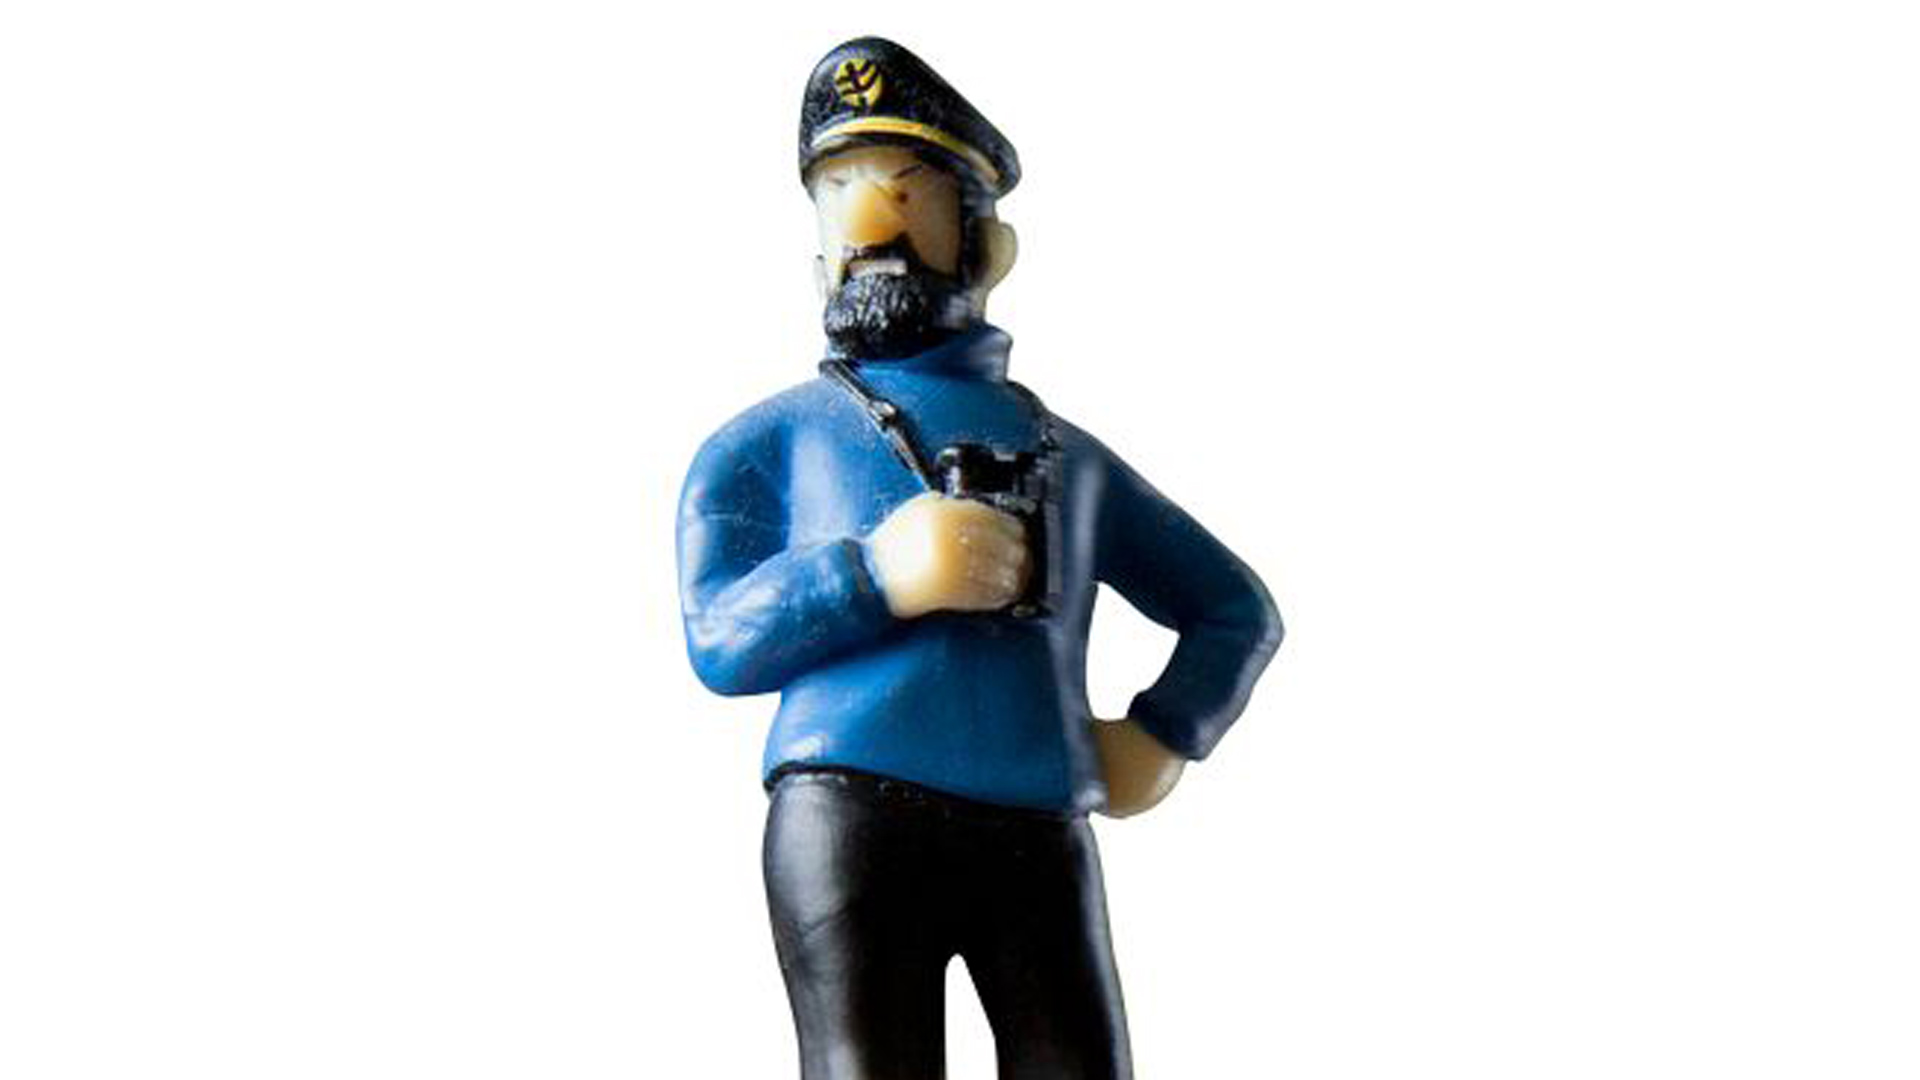 Kapteeni Haddock on sekä Tintin lukijoiden että niitä suomentaneen Heikki Kaukorannan suosikkihahmo.